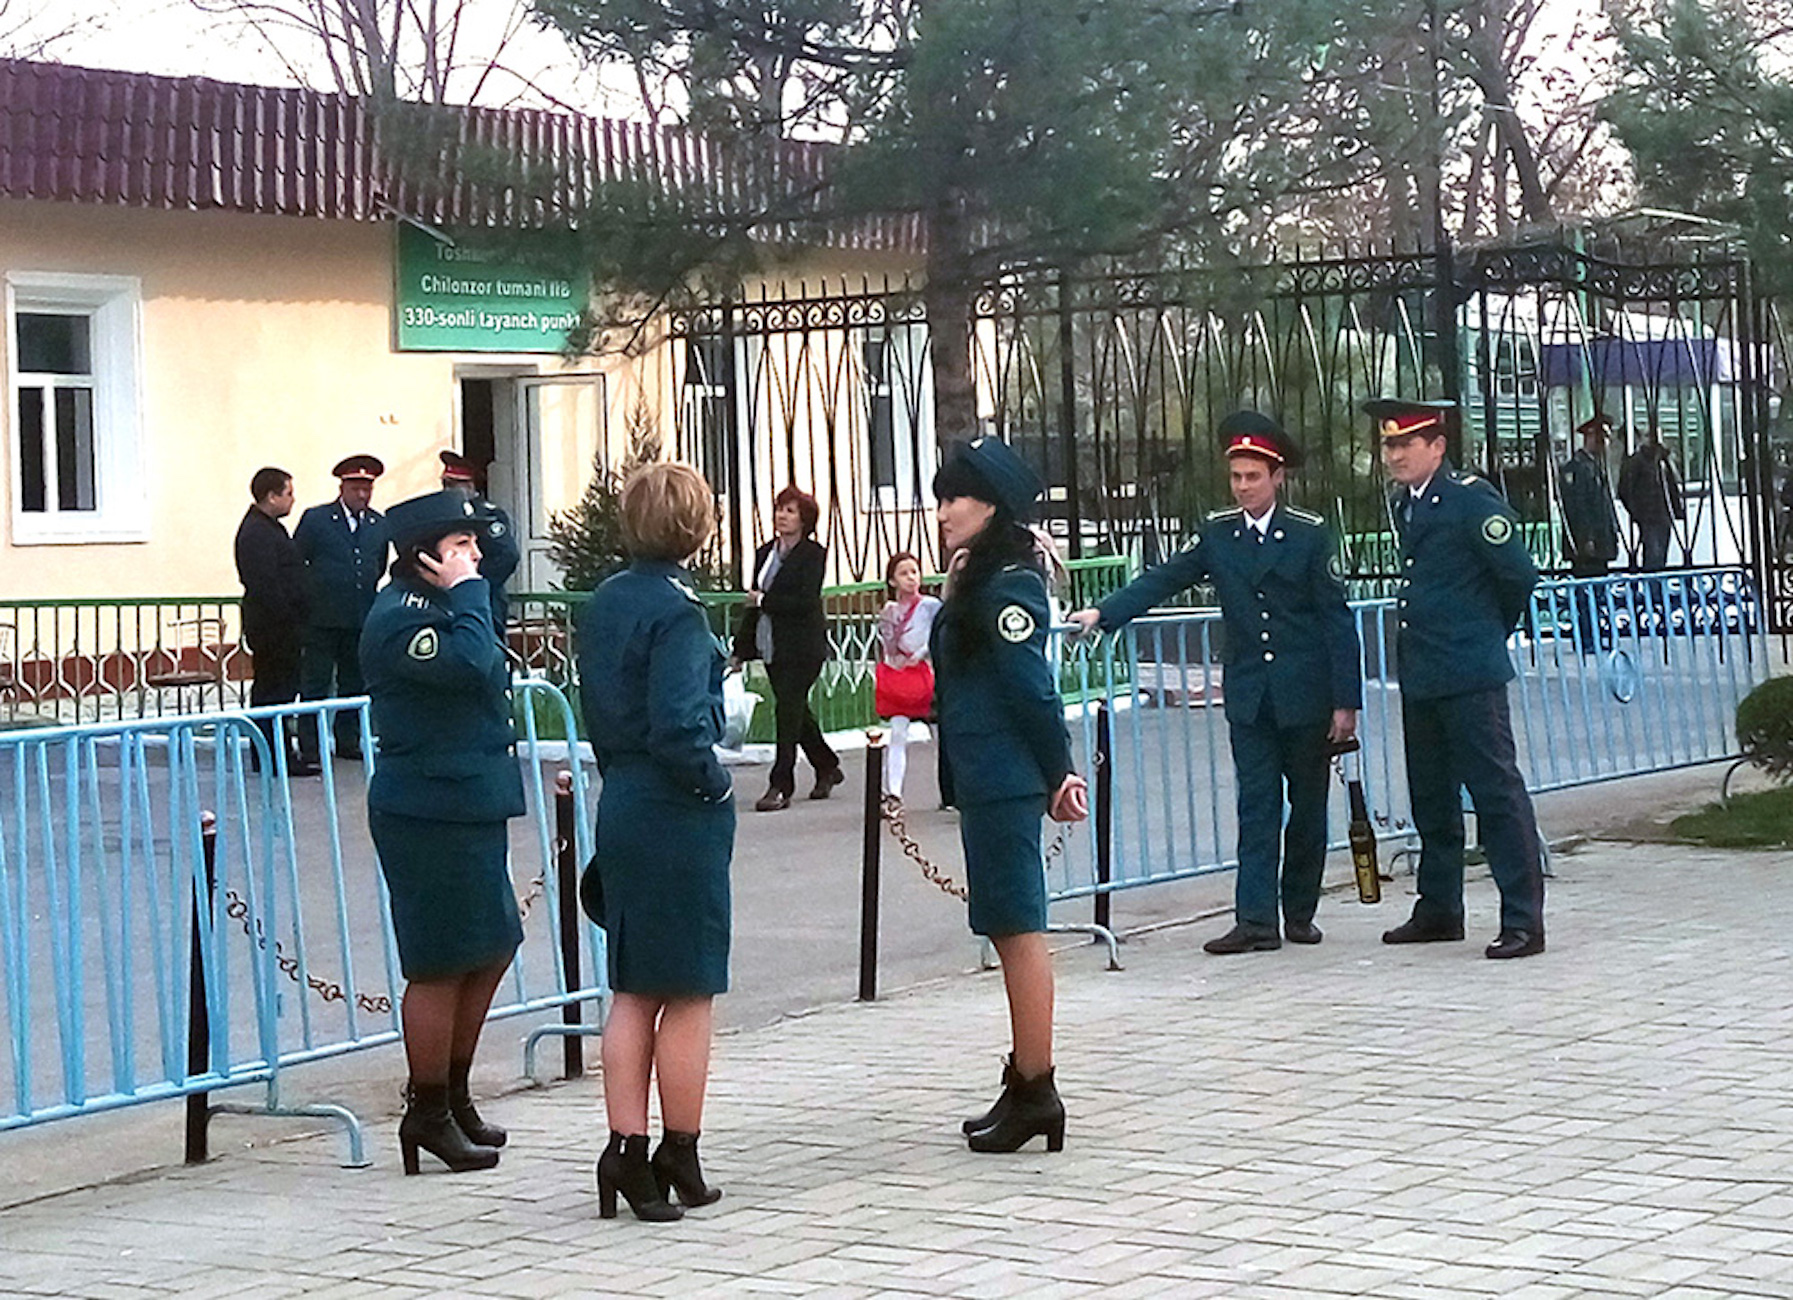 
Сотрудники правоохранительных органов охраняют порядок в парке "Миллий Бог" в Ташкенте 21 марта 2017 года. [Максим Енисеев]        